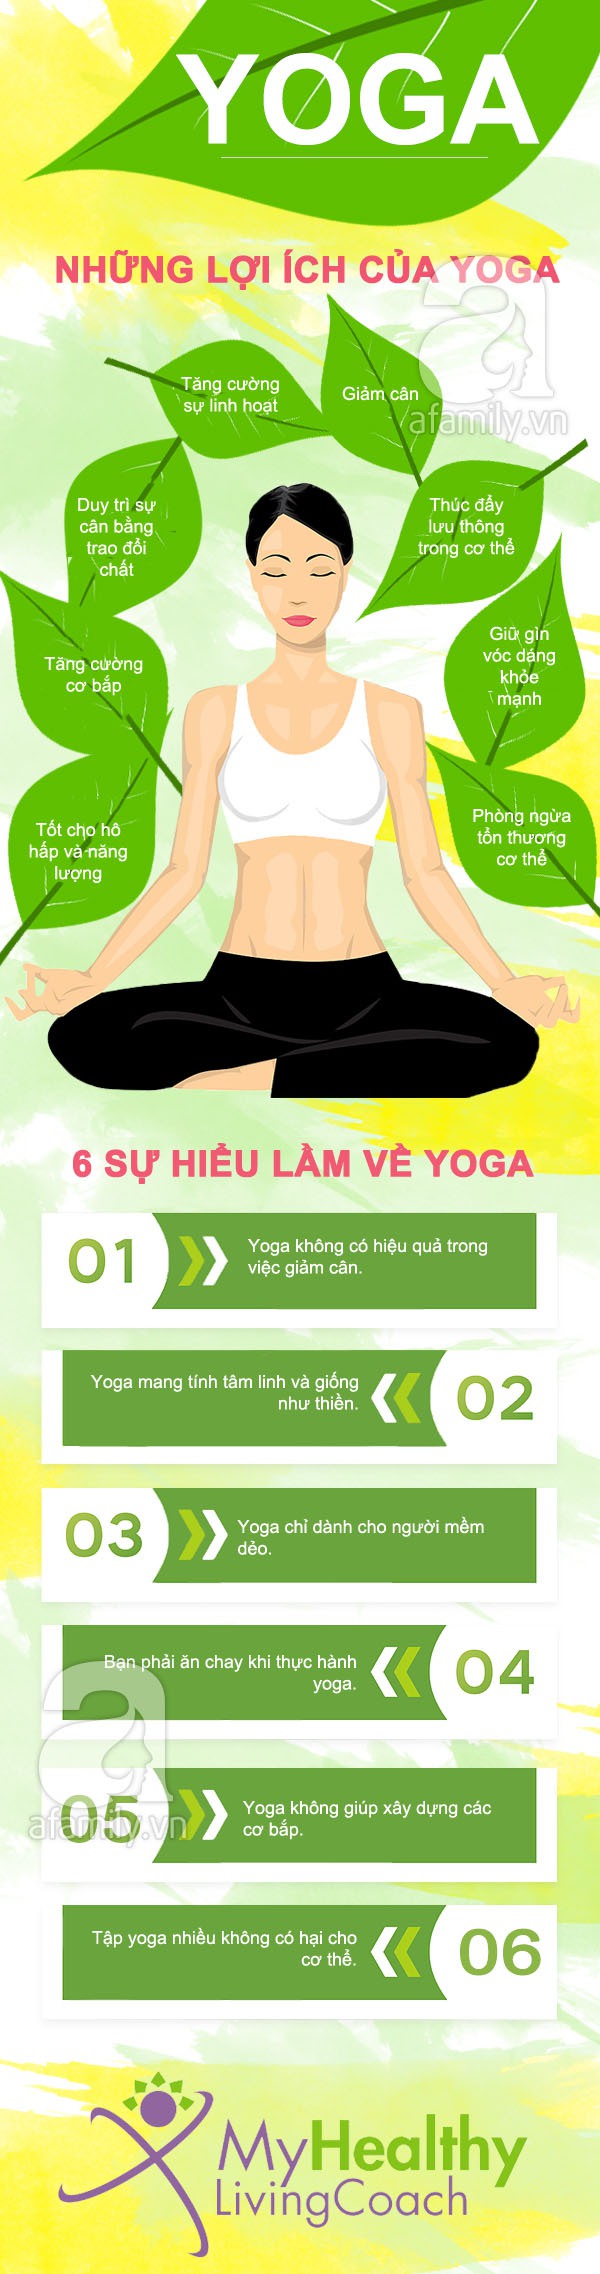 Giải mã 6 sự hiểu lầm cơ bản về tập yoga 1